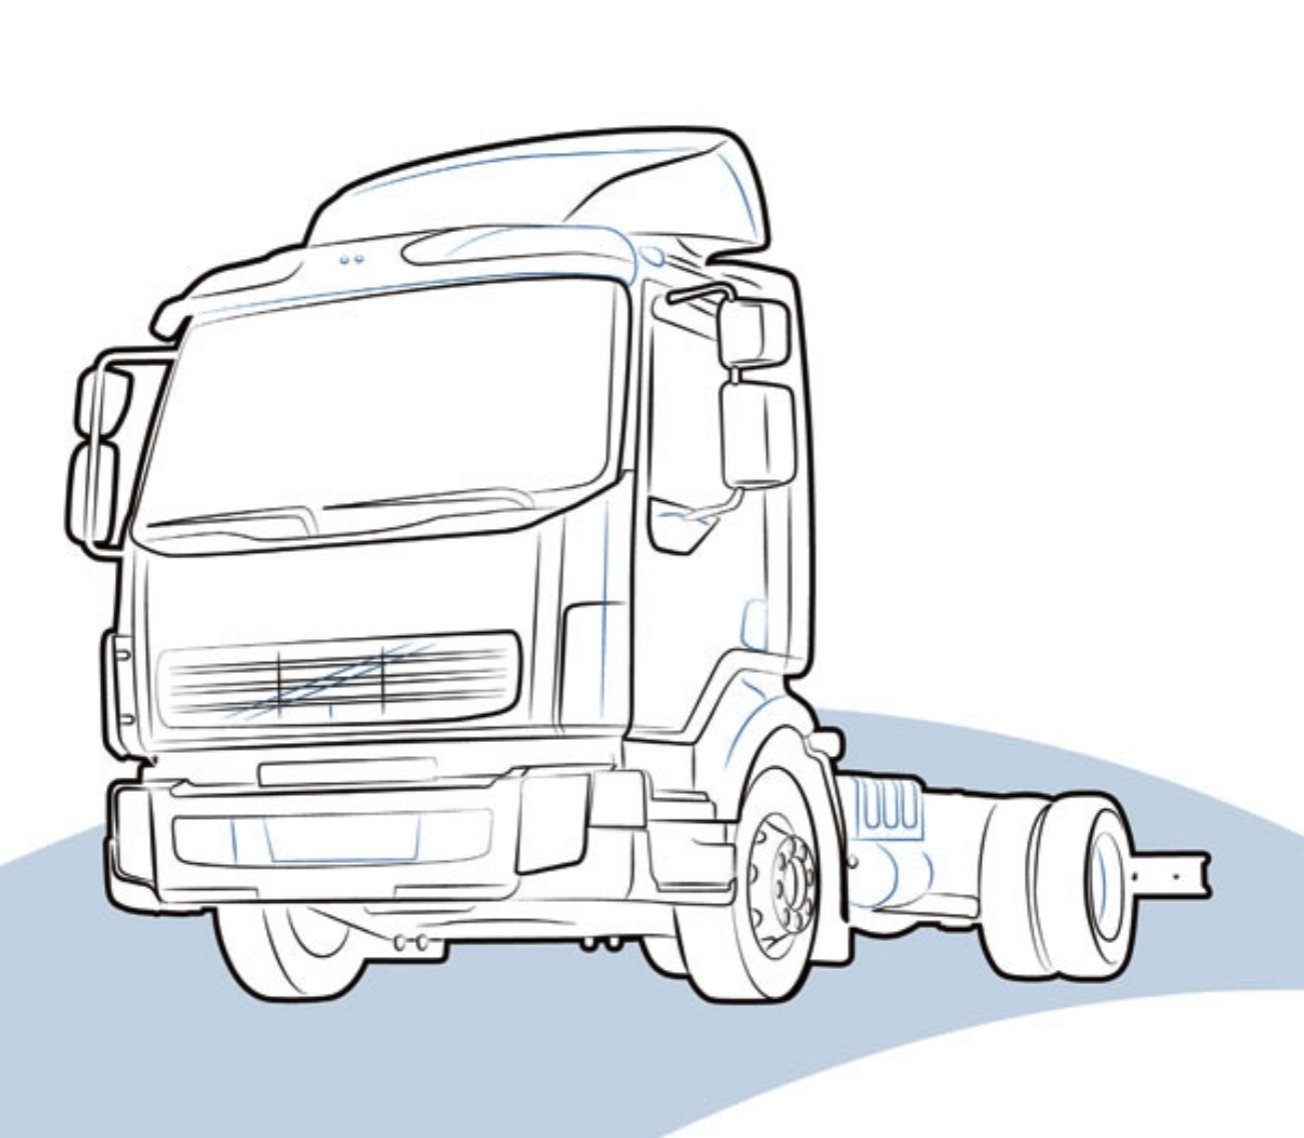 KIT CONNESSIONE per DAF LF lato - Carrozzeria Truck